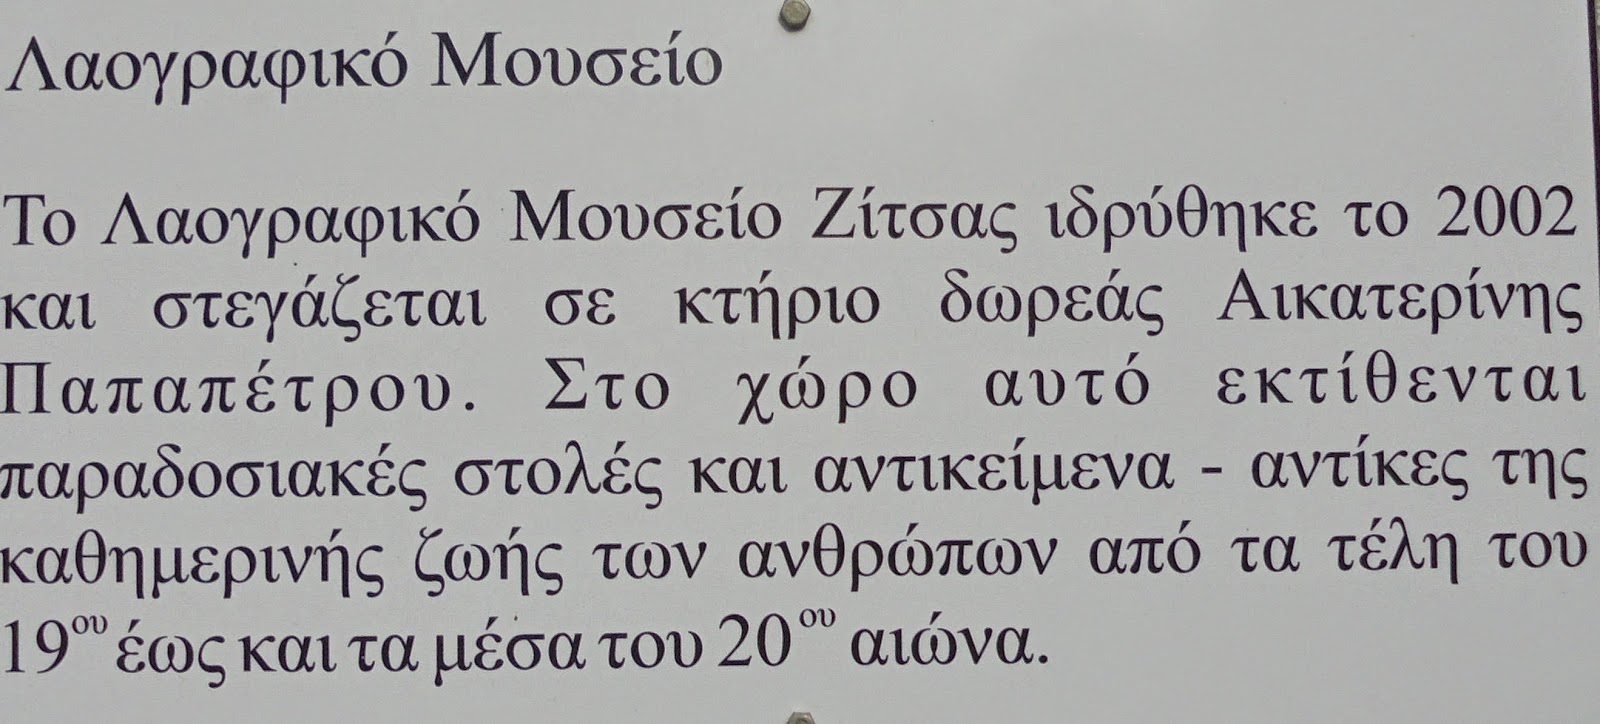 το Λαογραφικό Μουσείο στη Ζίτσα Ιωαννίνων